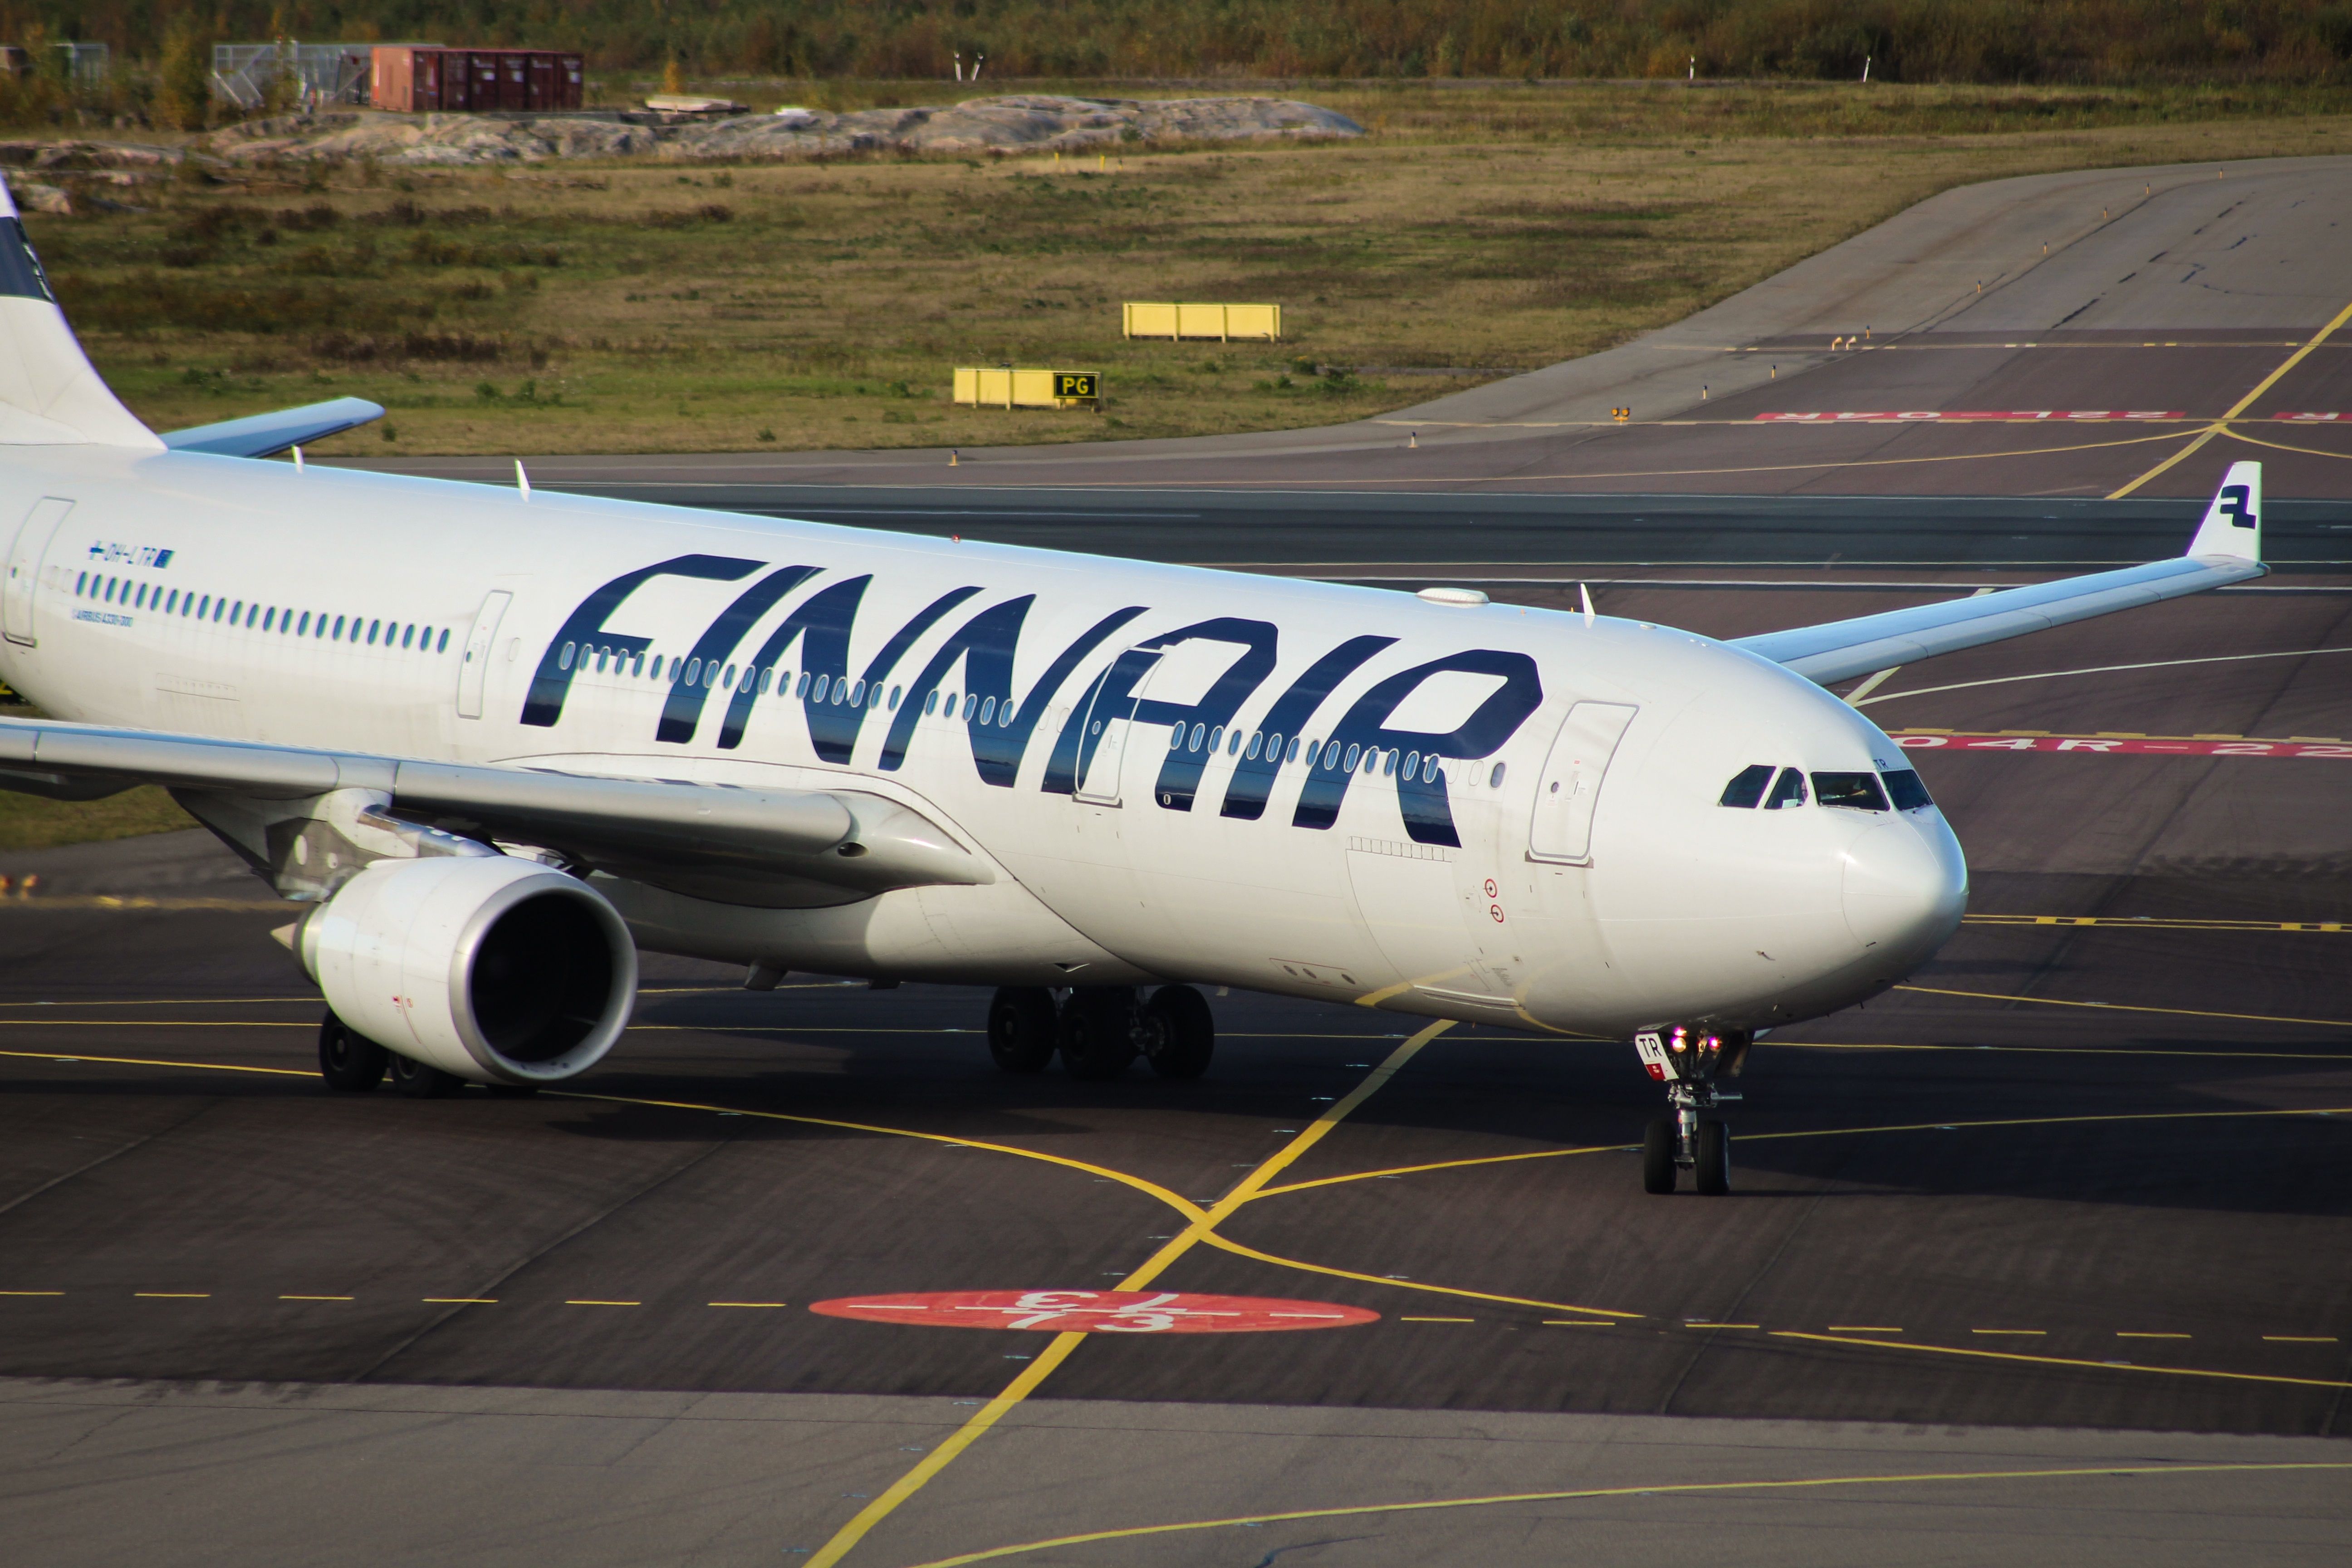 Finnair A330-300 taxiing